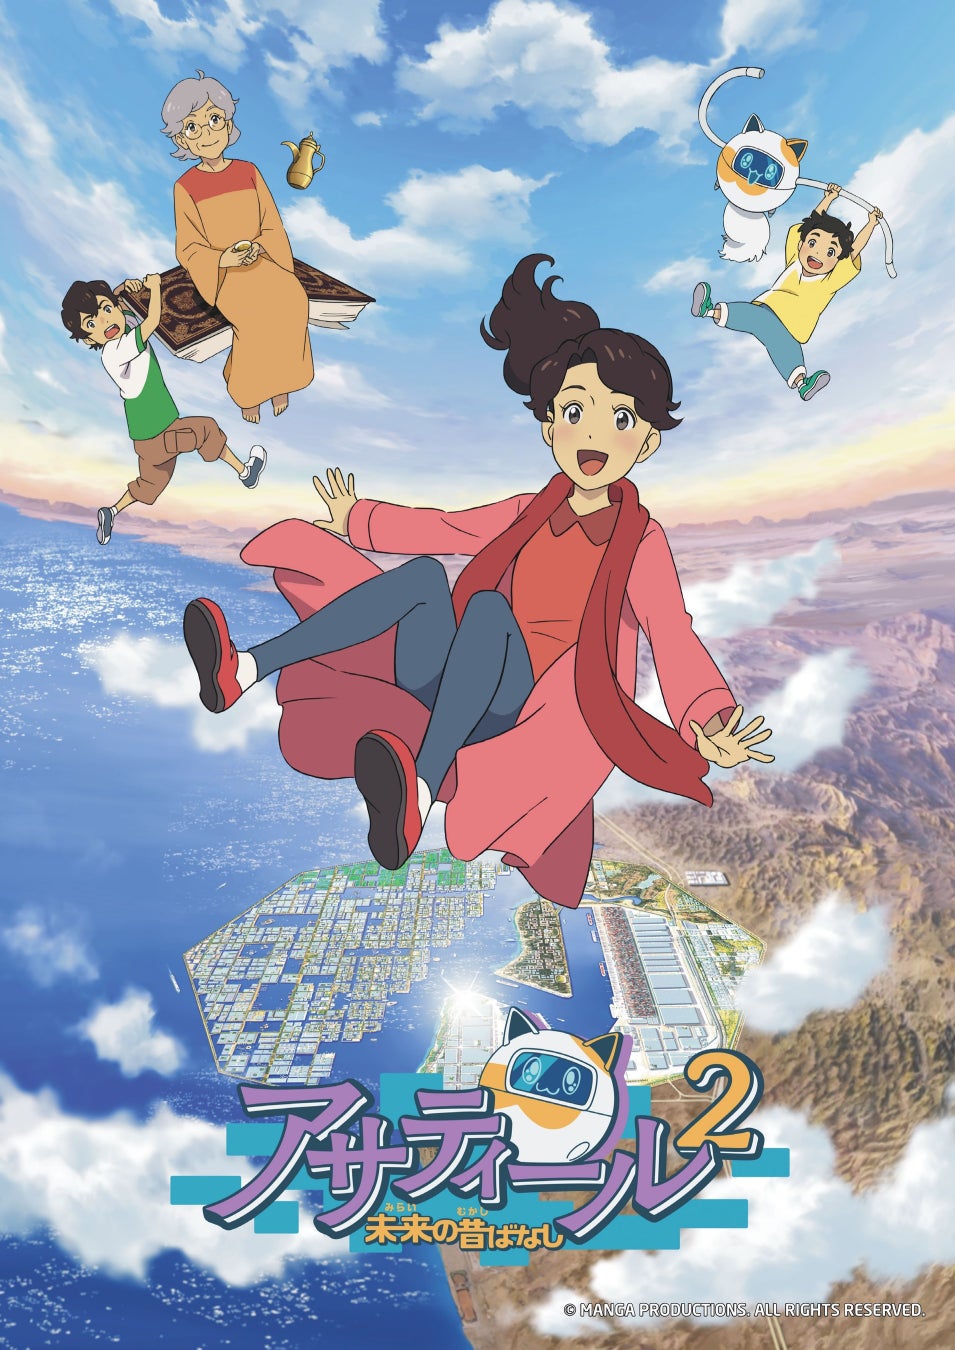 マンガプロダクションズ、サウジ・日本共同制作のアニメシリーズ「アサティール2 未来の昔ばなし」のキービジュアルを東京で初公開